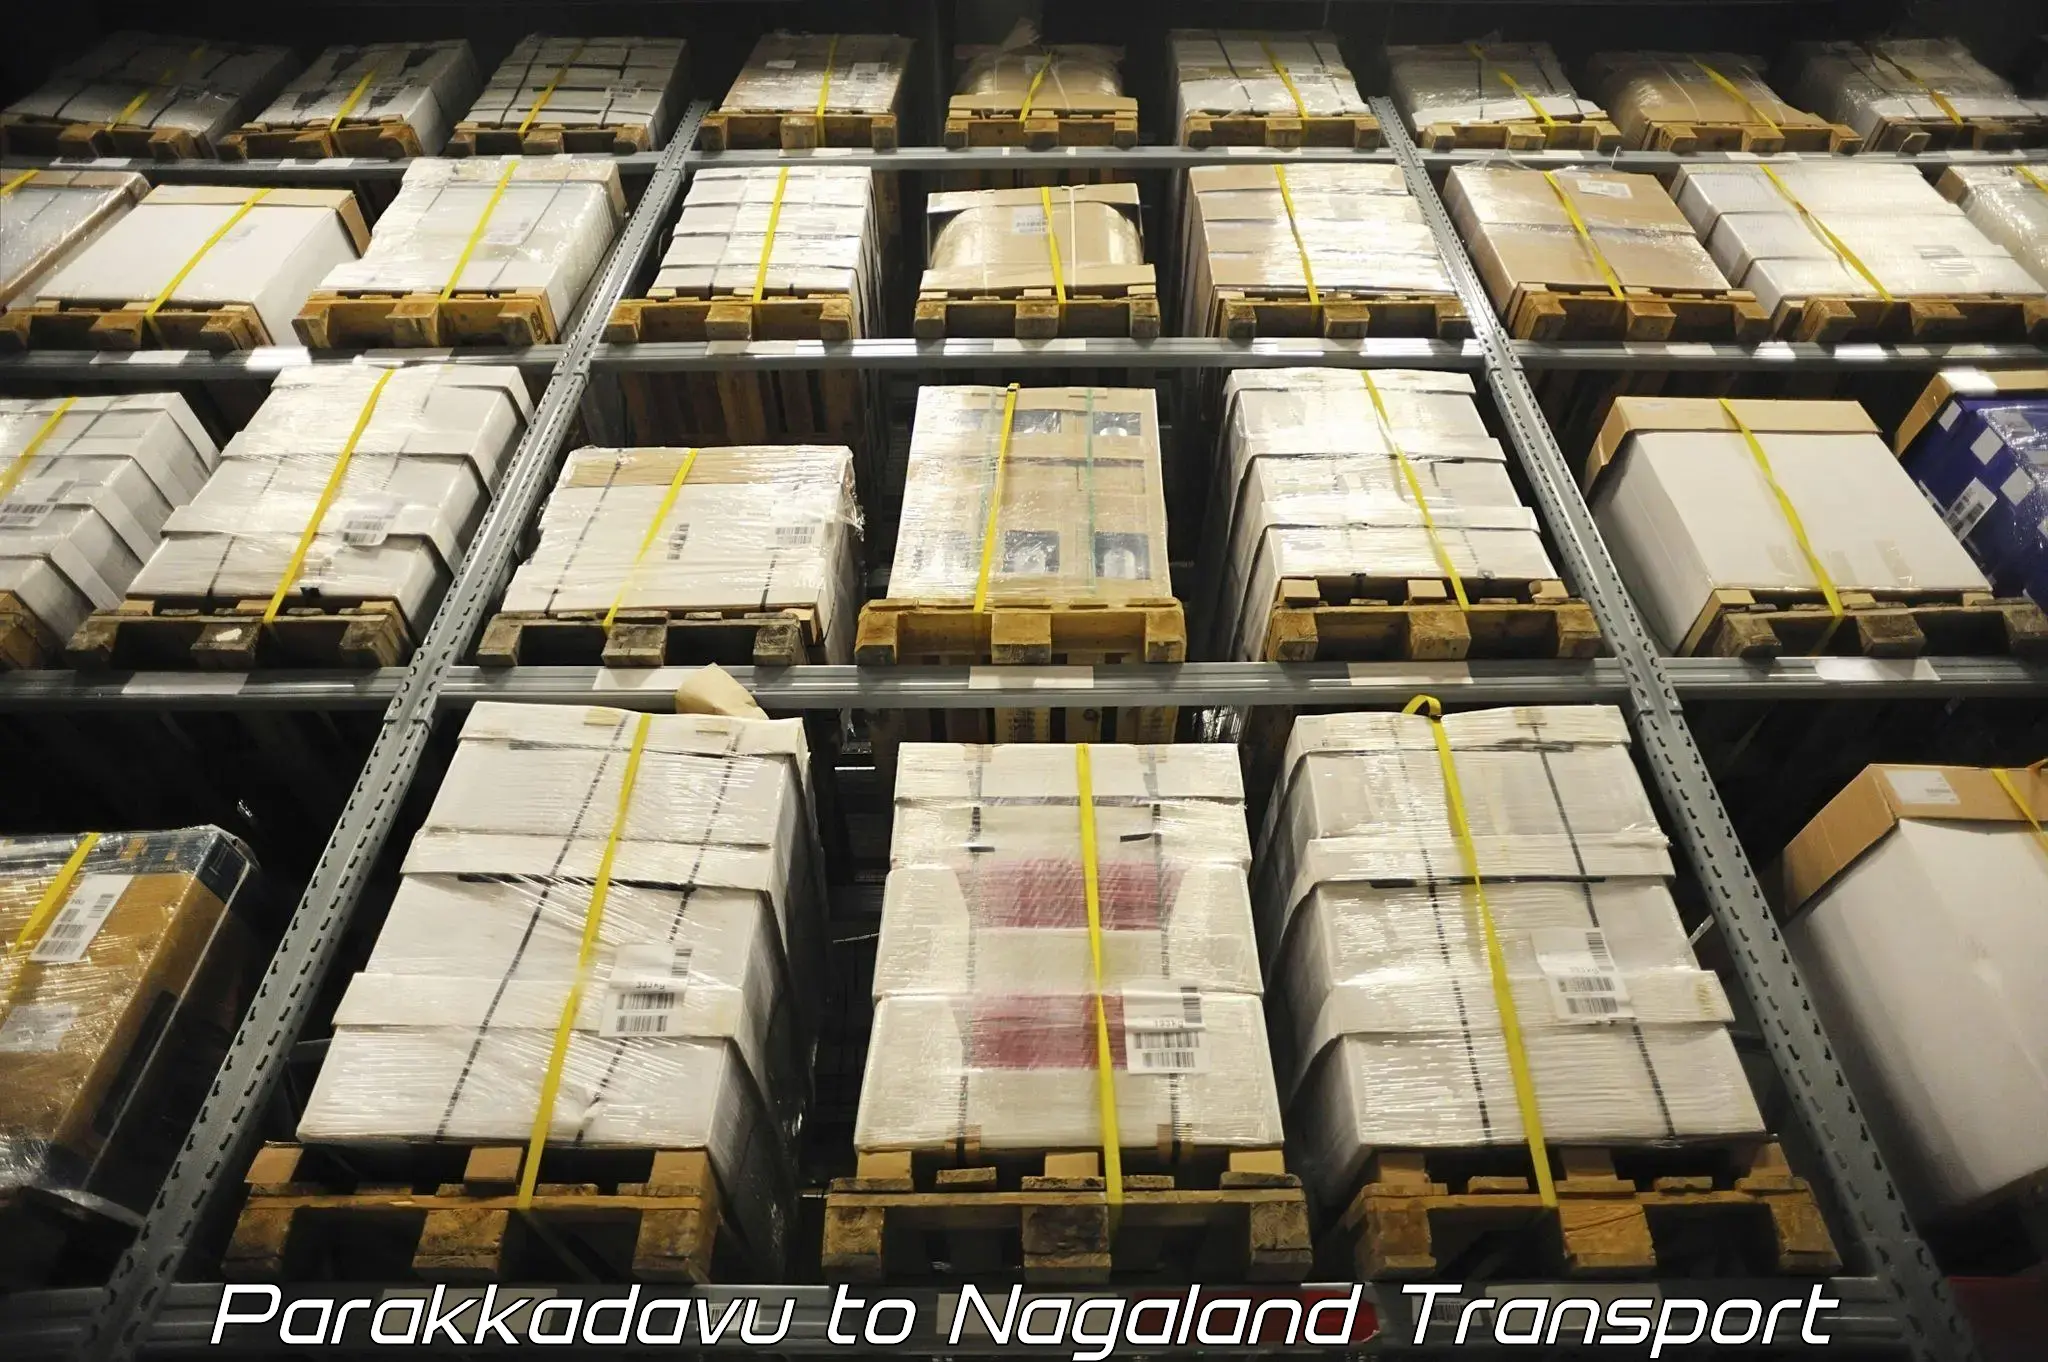 Cargo transportation services Parakkadavu to Nagaland